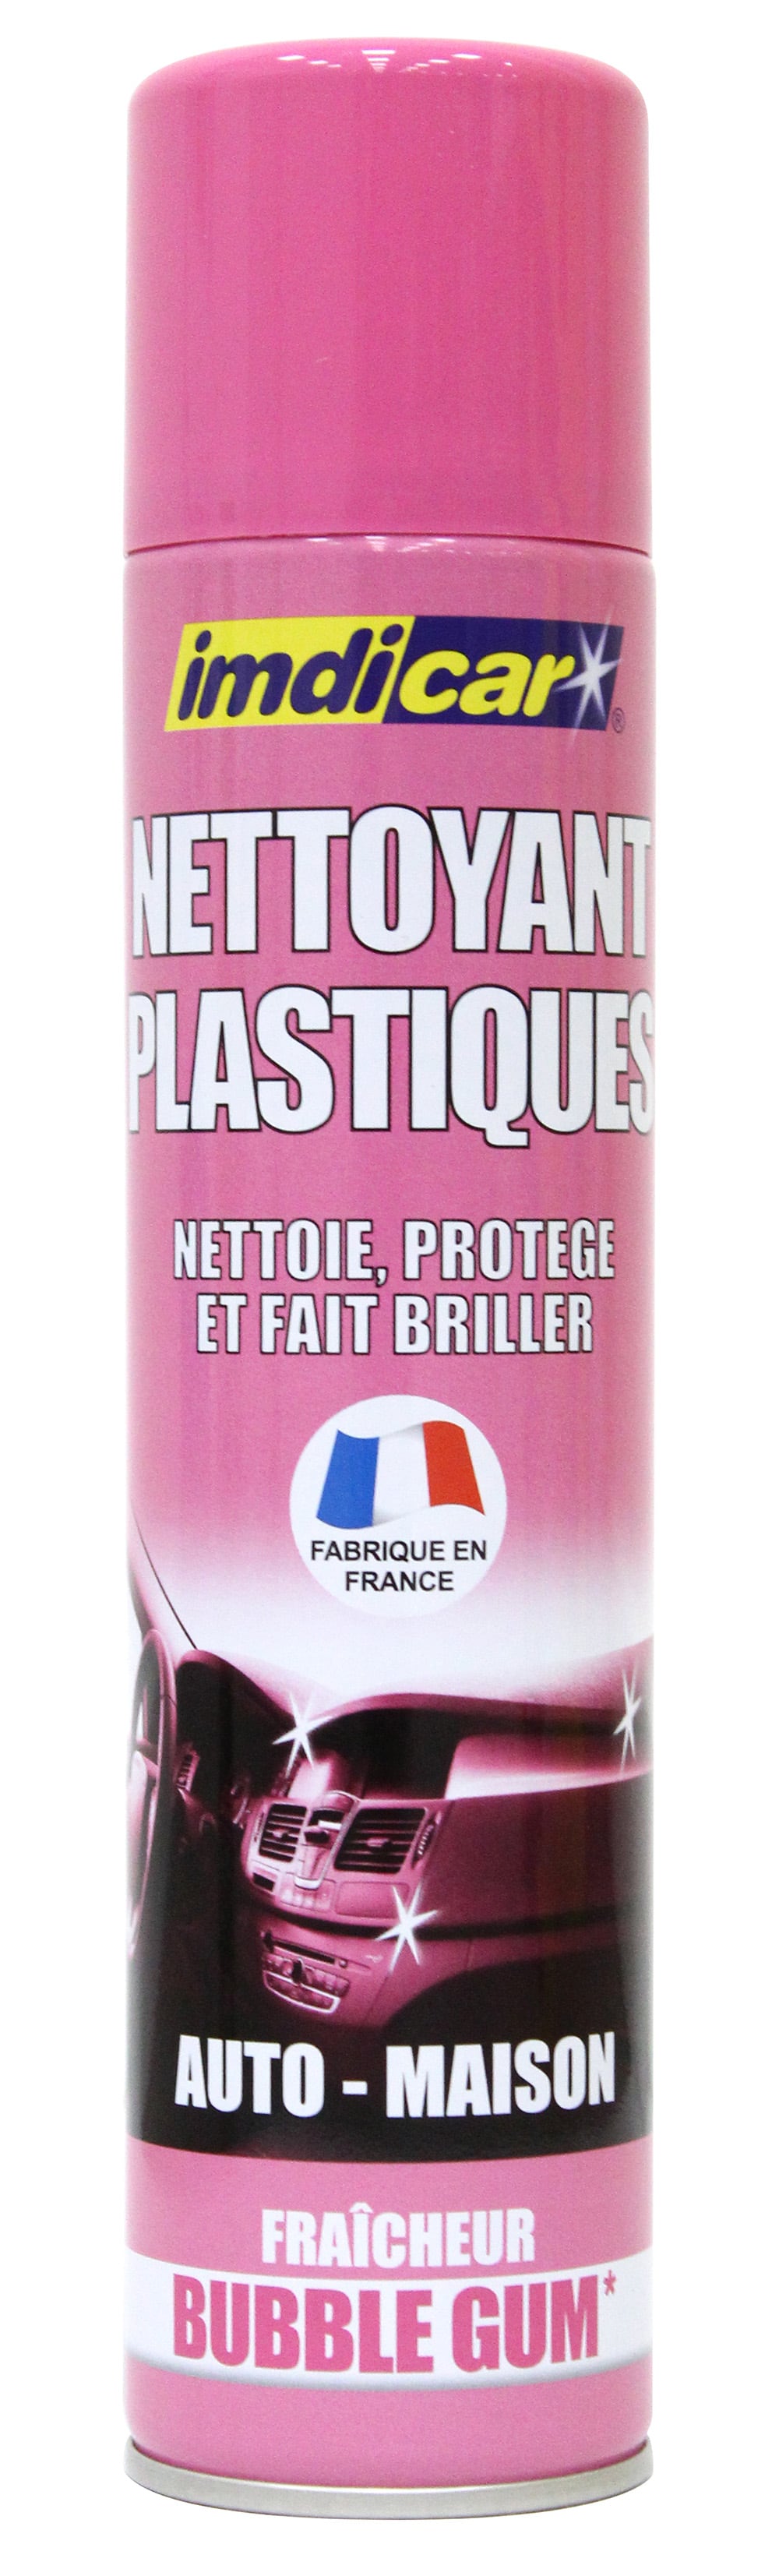 Accessoire Nettoyant plastique bubble gum 300 ml